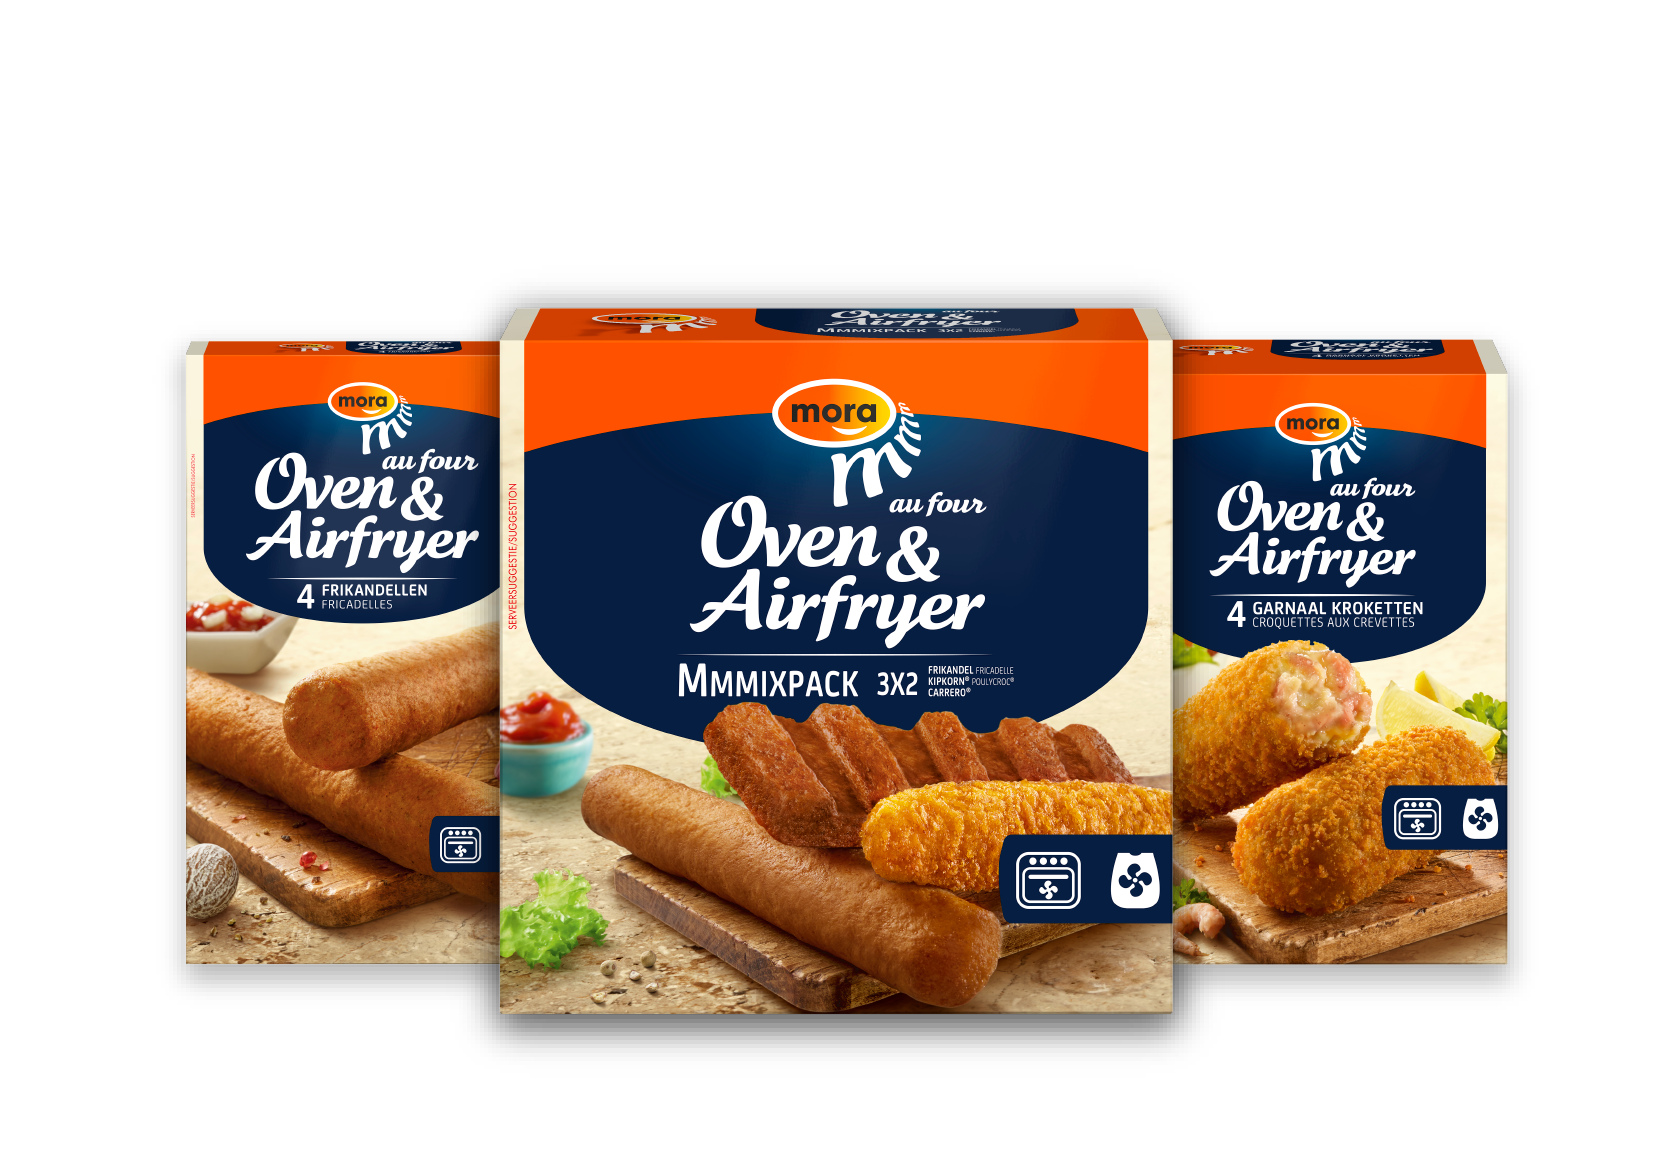 Welke Mora snacks komen perfect uit de oven & Airfryer?